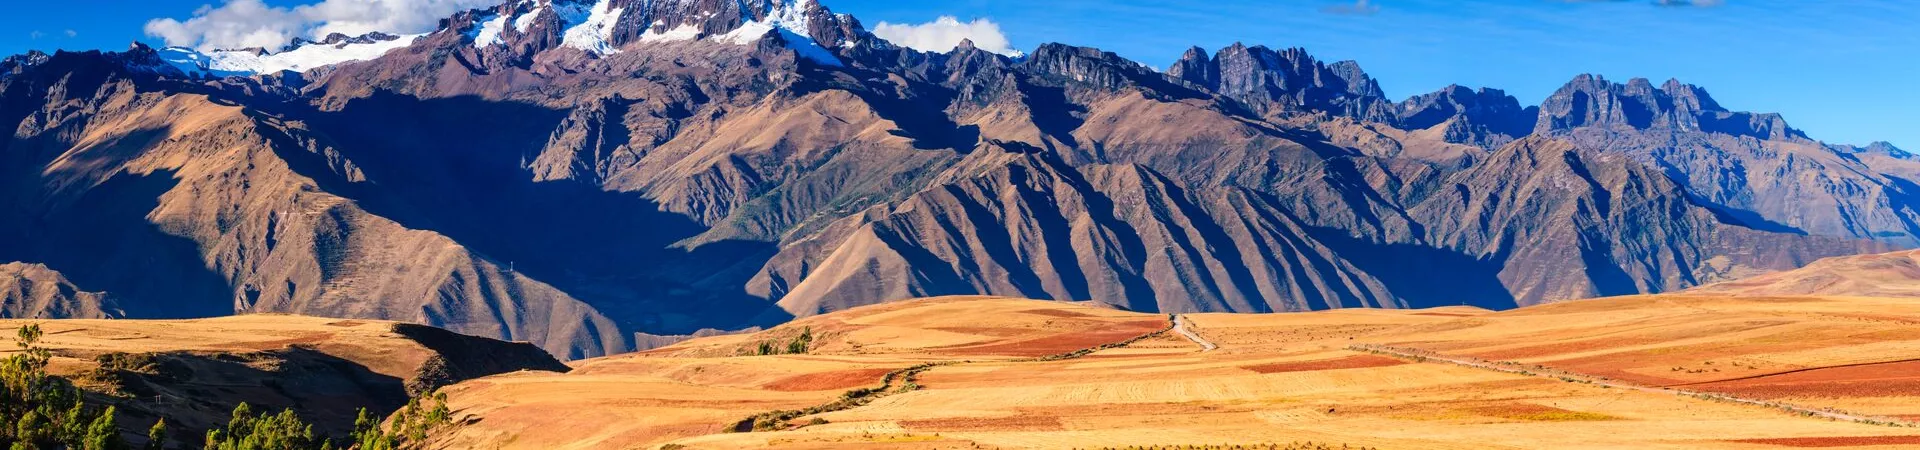 Peruvian Altiplano